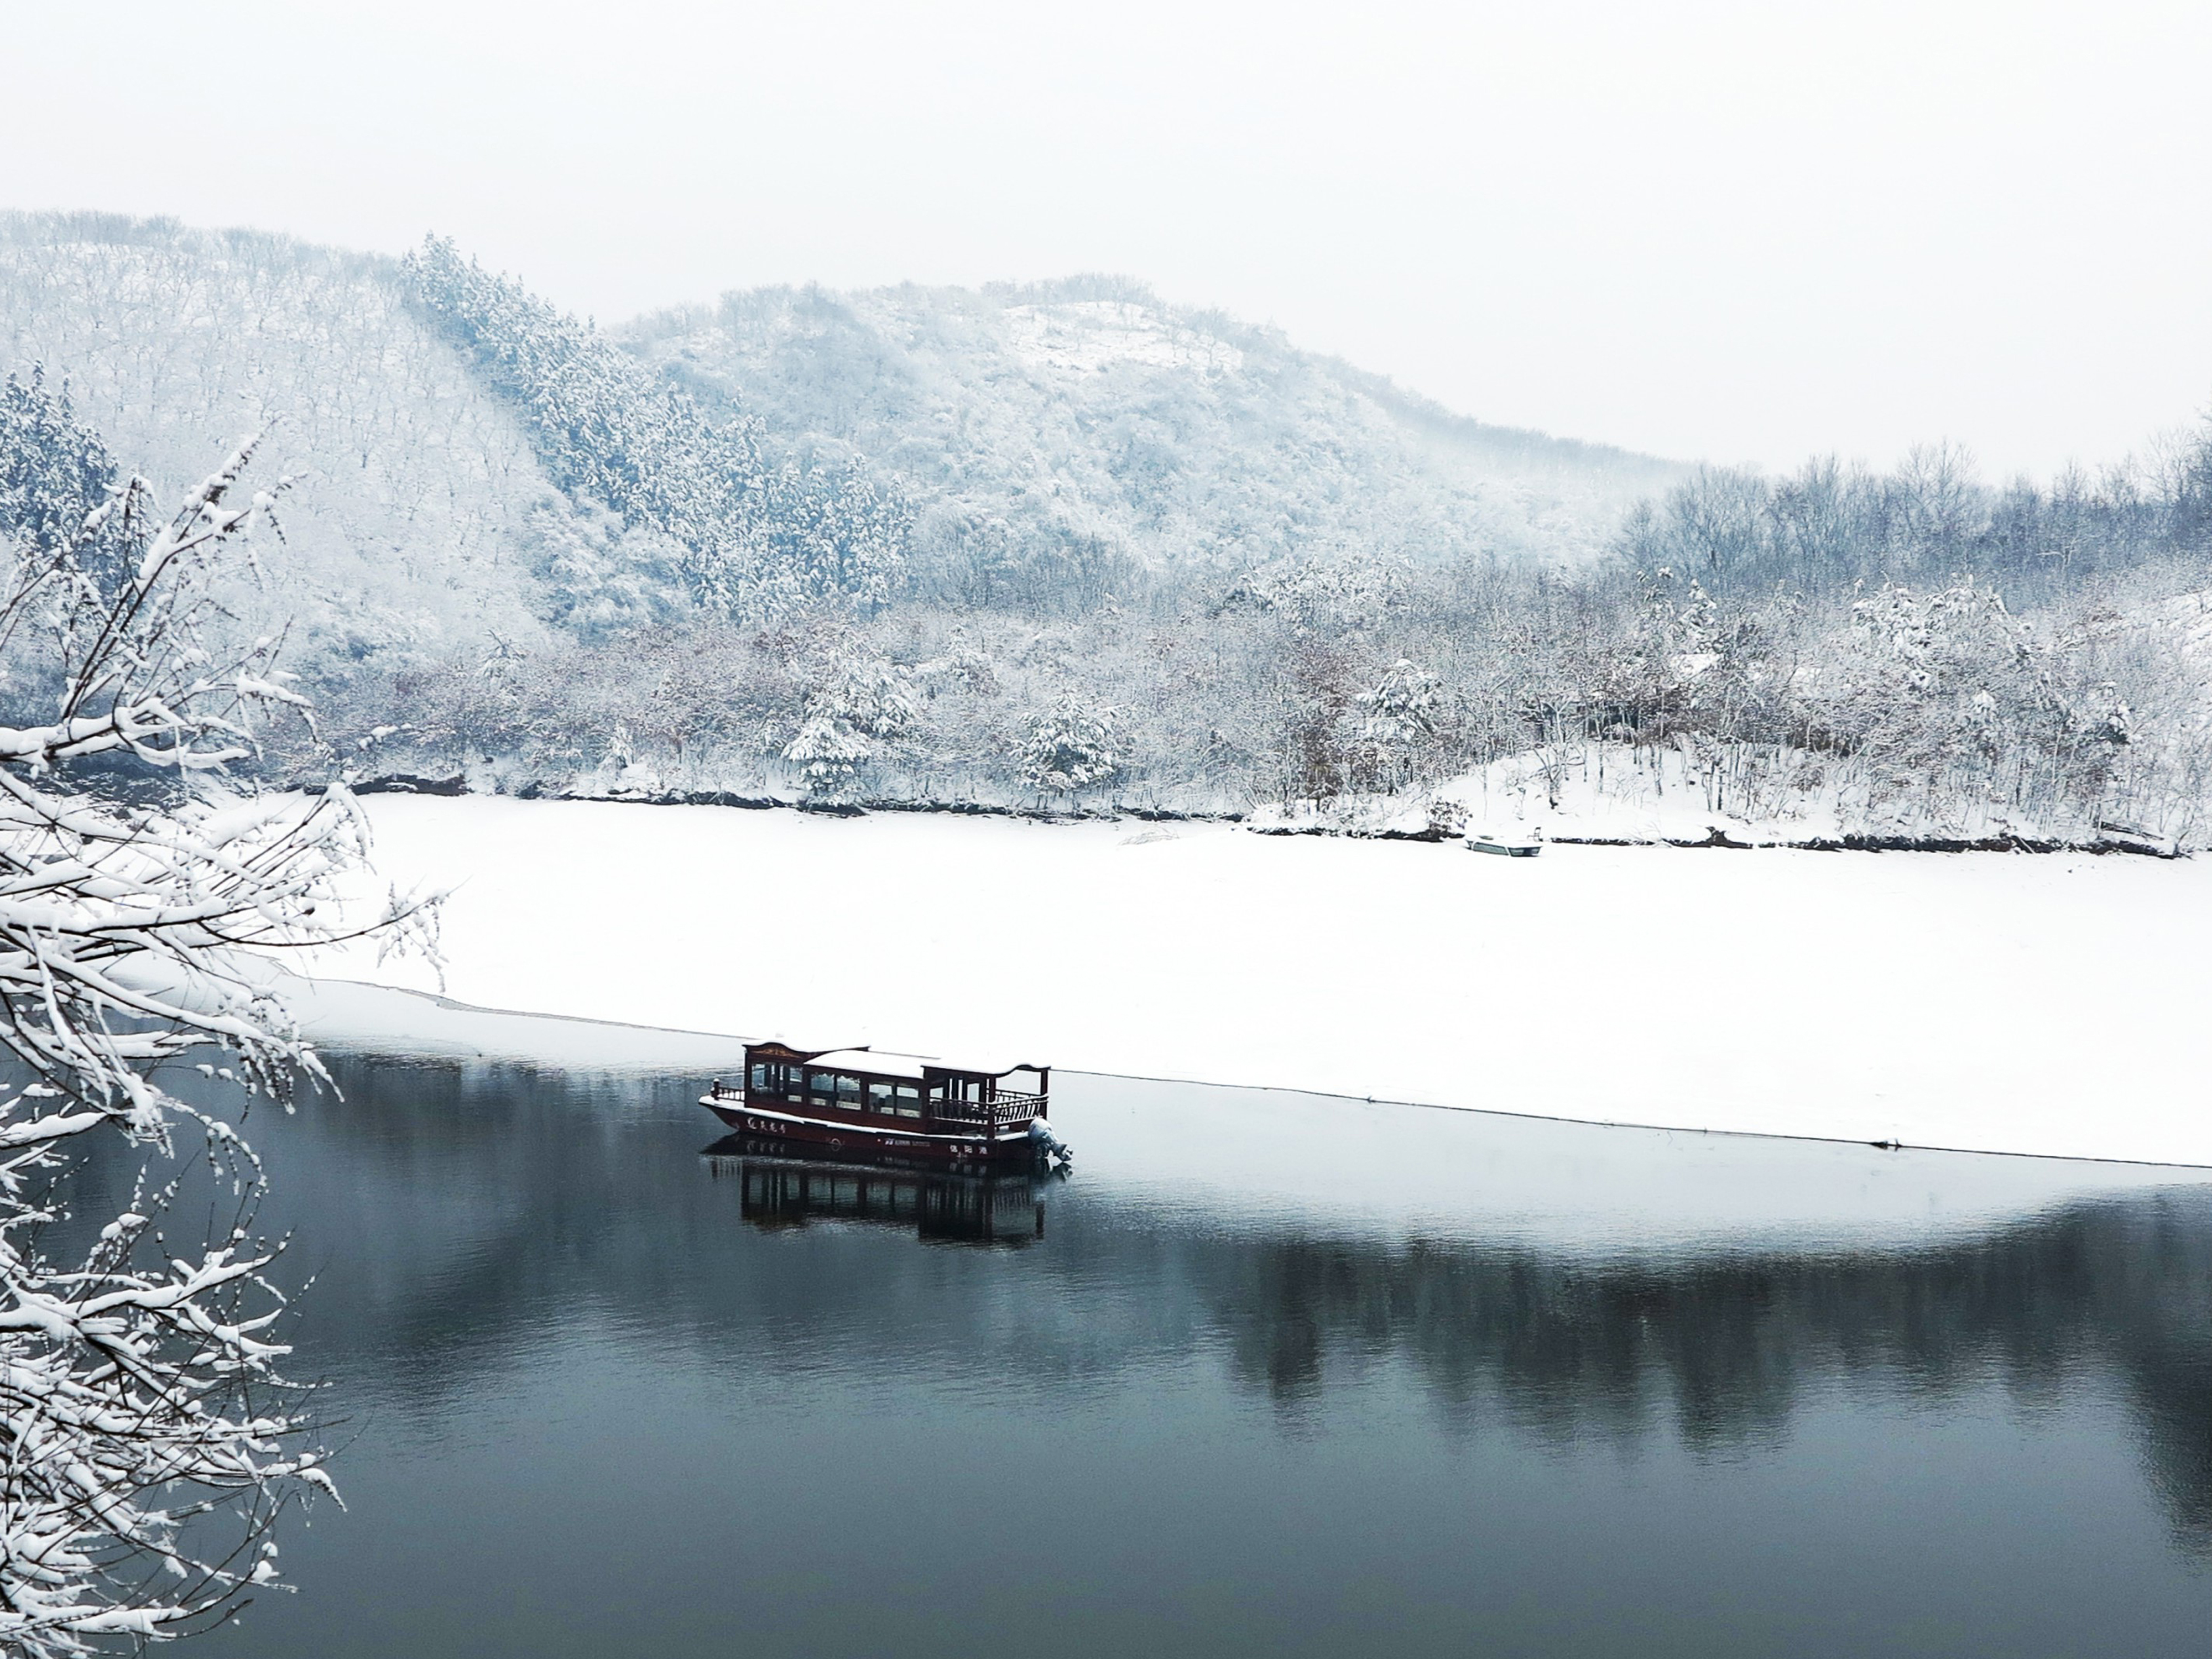 信阳灵龙湖生态文化旅游区之冬返回搜狐,查看更多